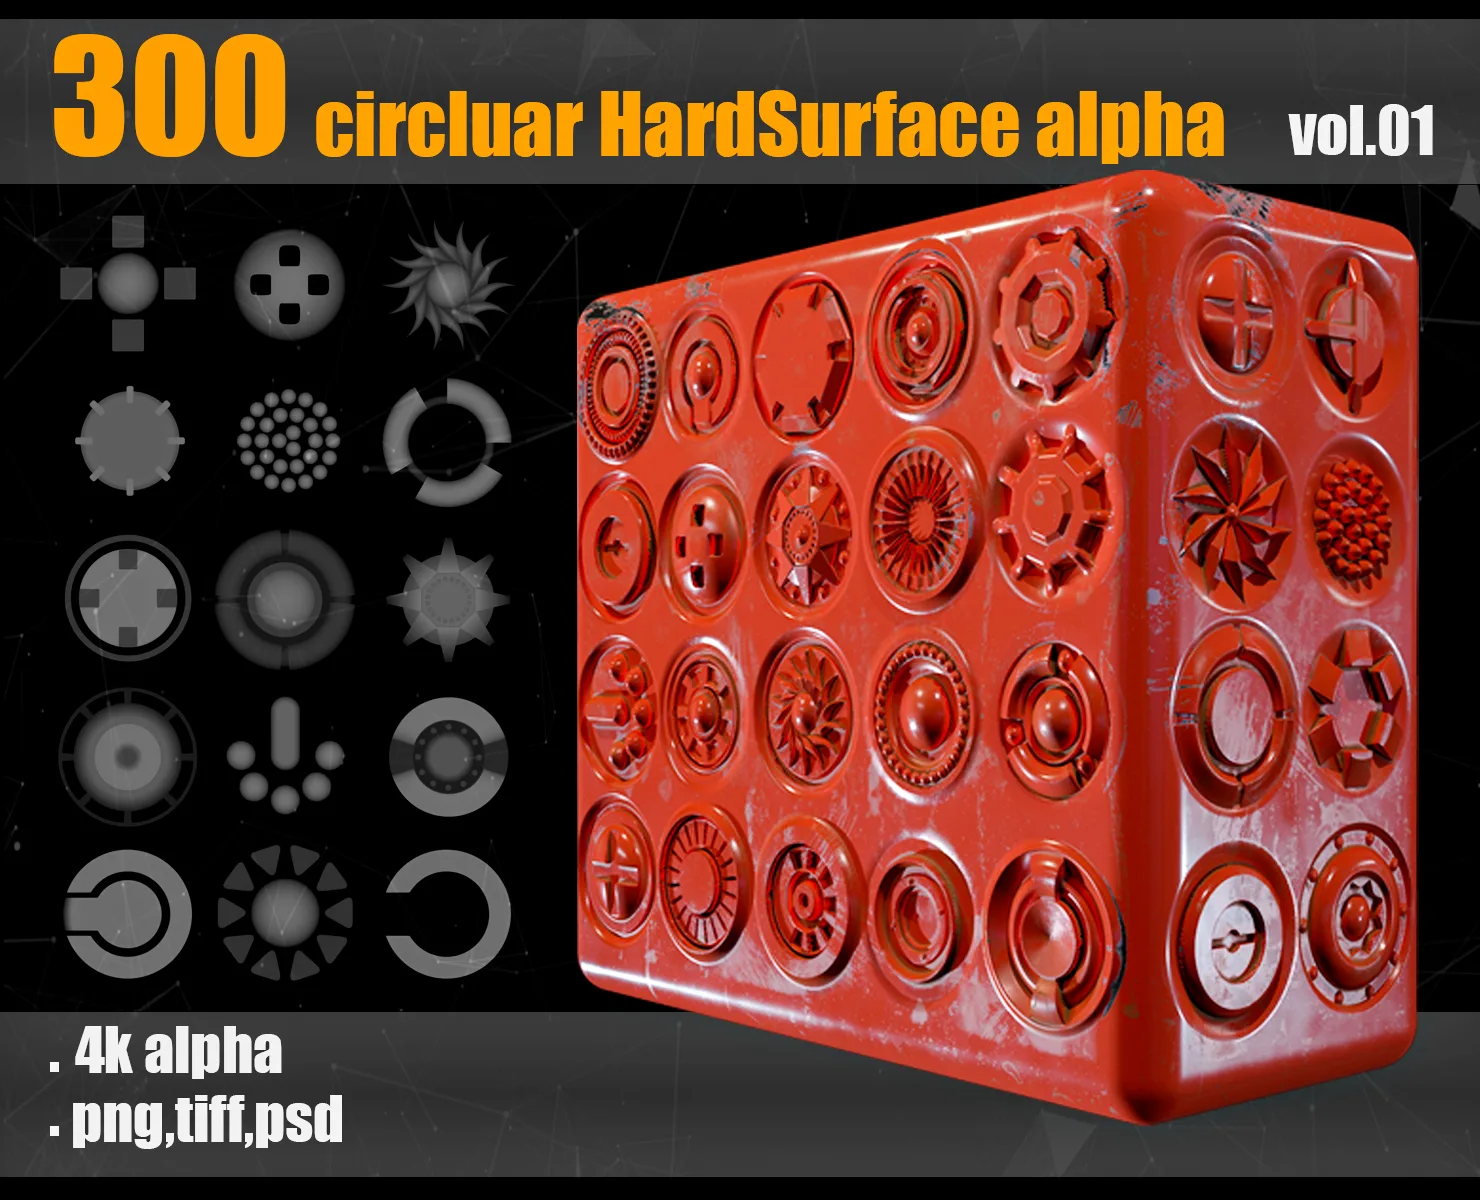 300 Circluar Hardsurface Alpha_vol01